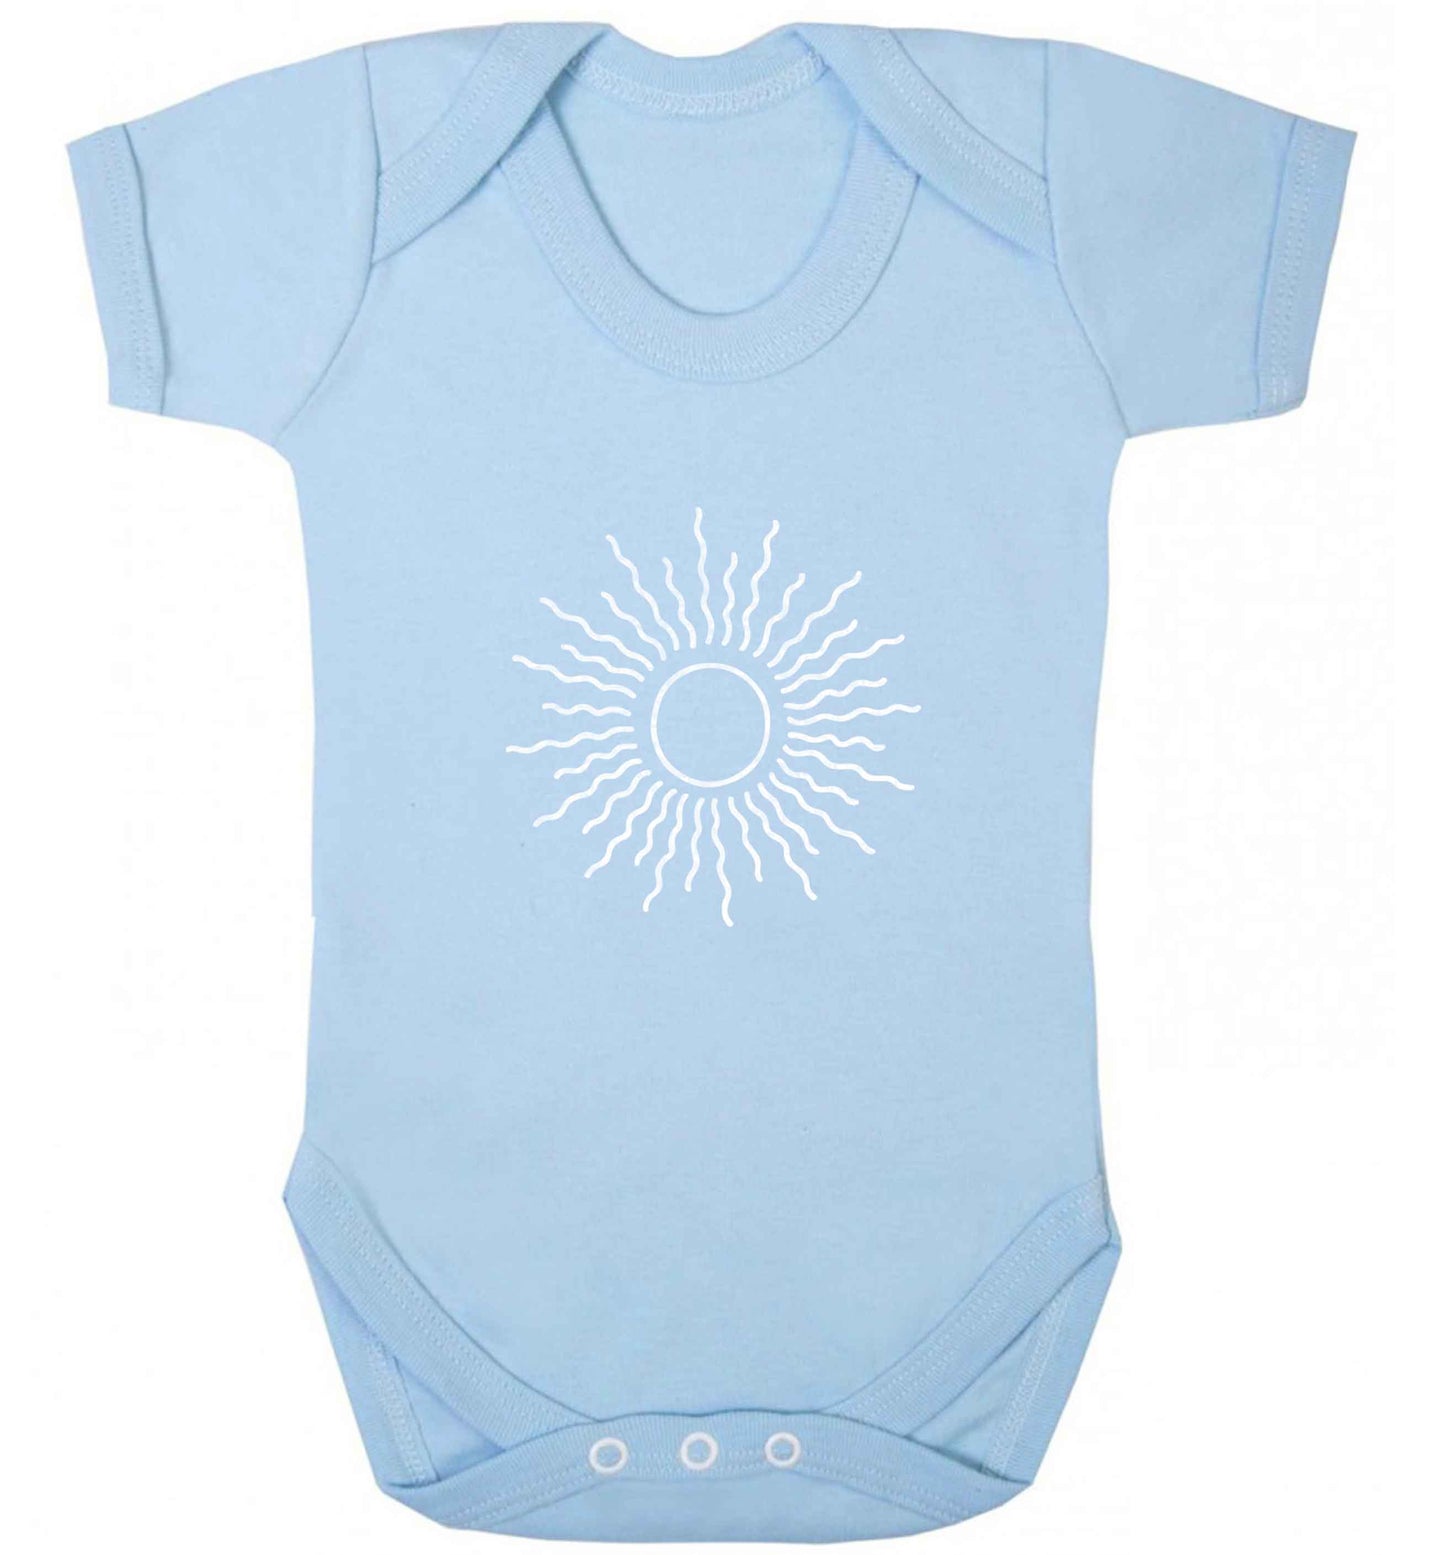 Sun illustration baby vest pale blue 18-24 months